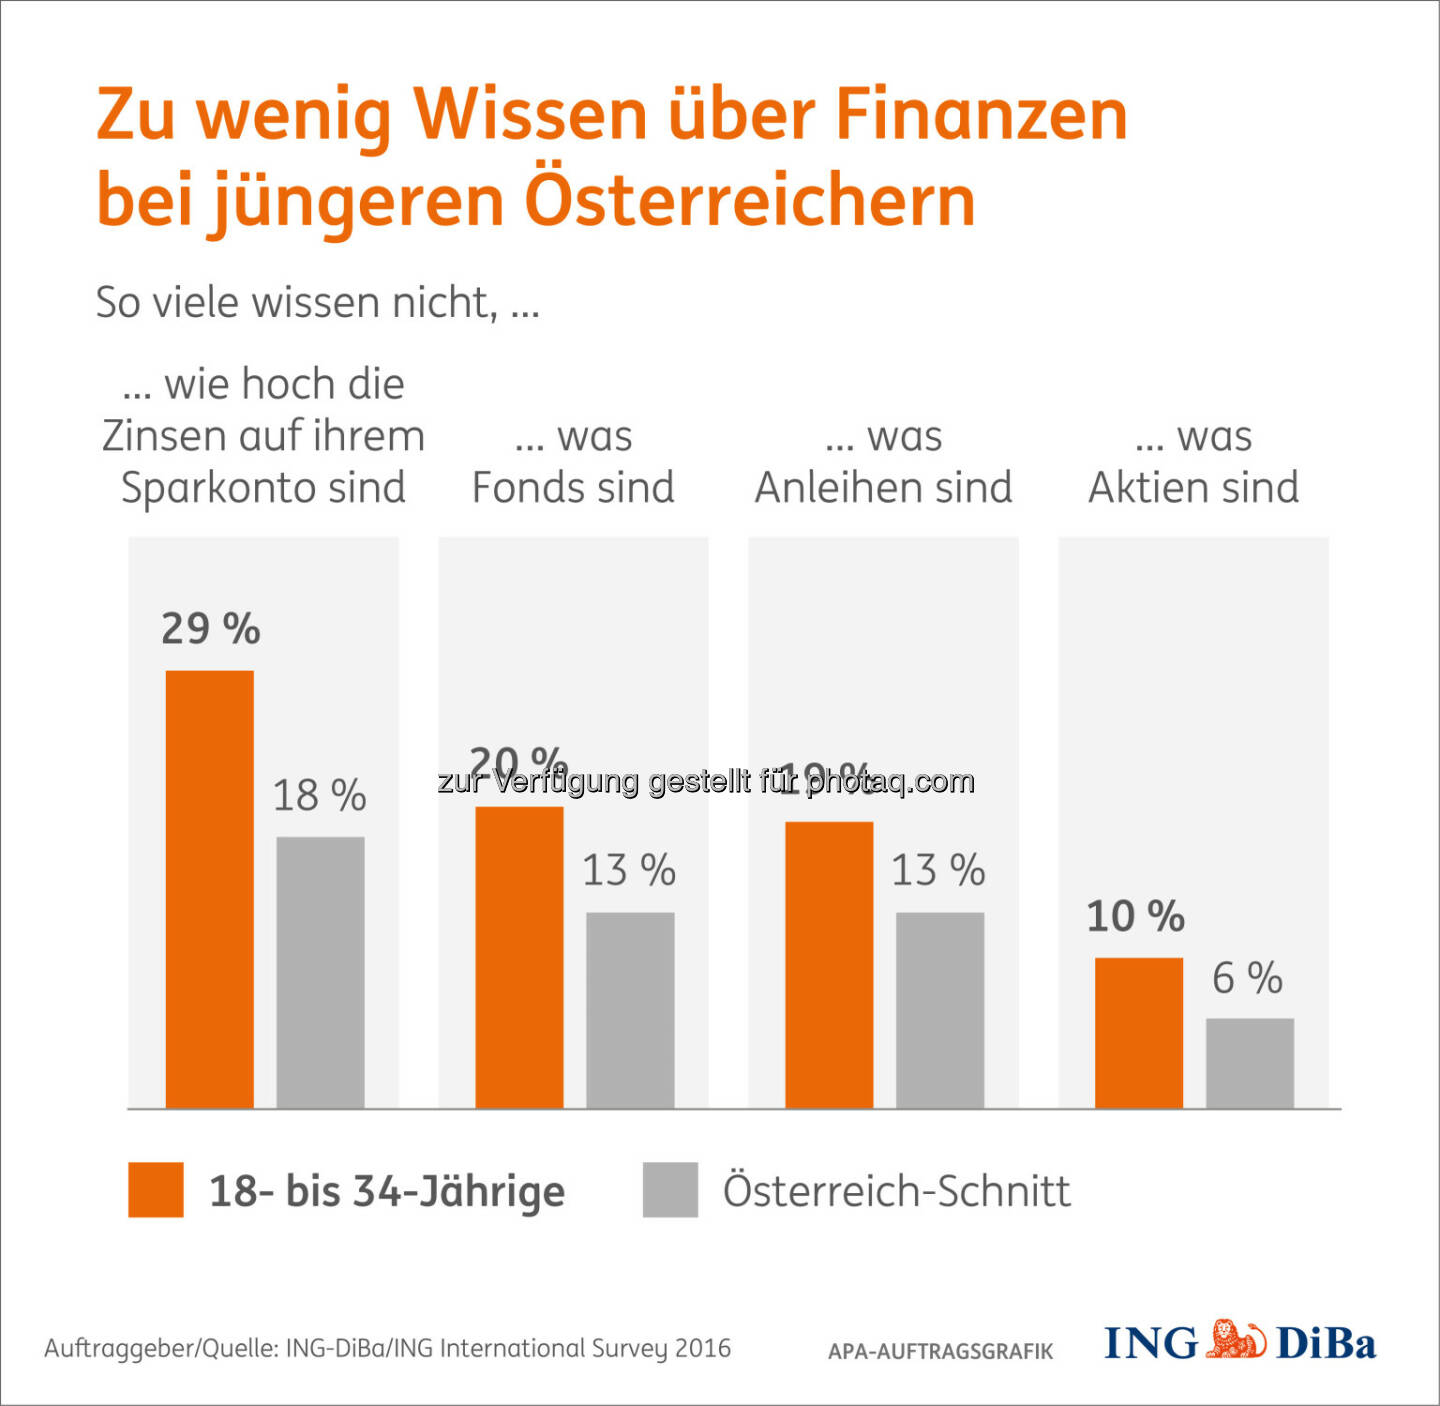 Grafik „Zu wenig Wissen über Finanzen“ : Umfrage im Auftrag der ING-DiBa : Junge Österreicher gehören zu den fleißigsten Sparern, sind aber uninformiert : Fotocredit: ING-DiBa Internationan Survey 2016/APA-Auftragsgrafik